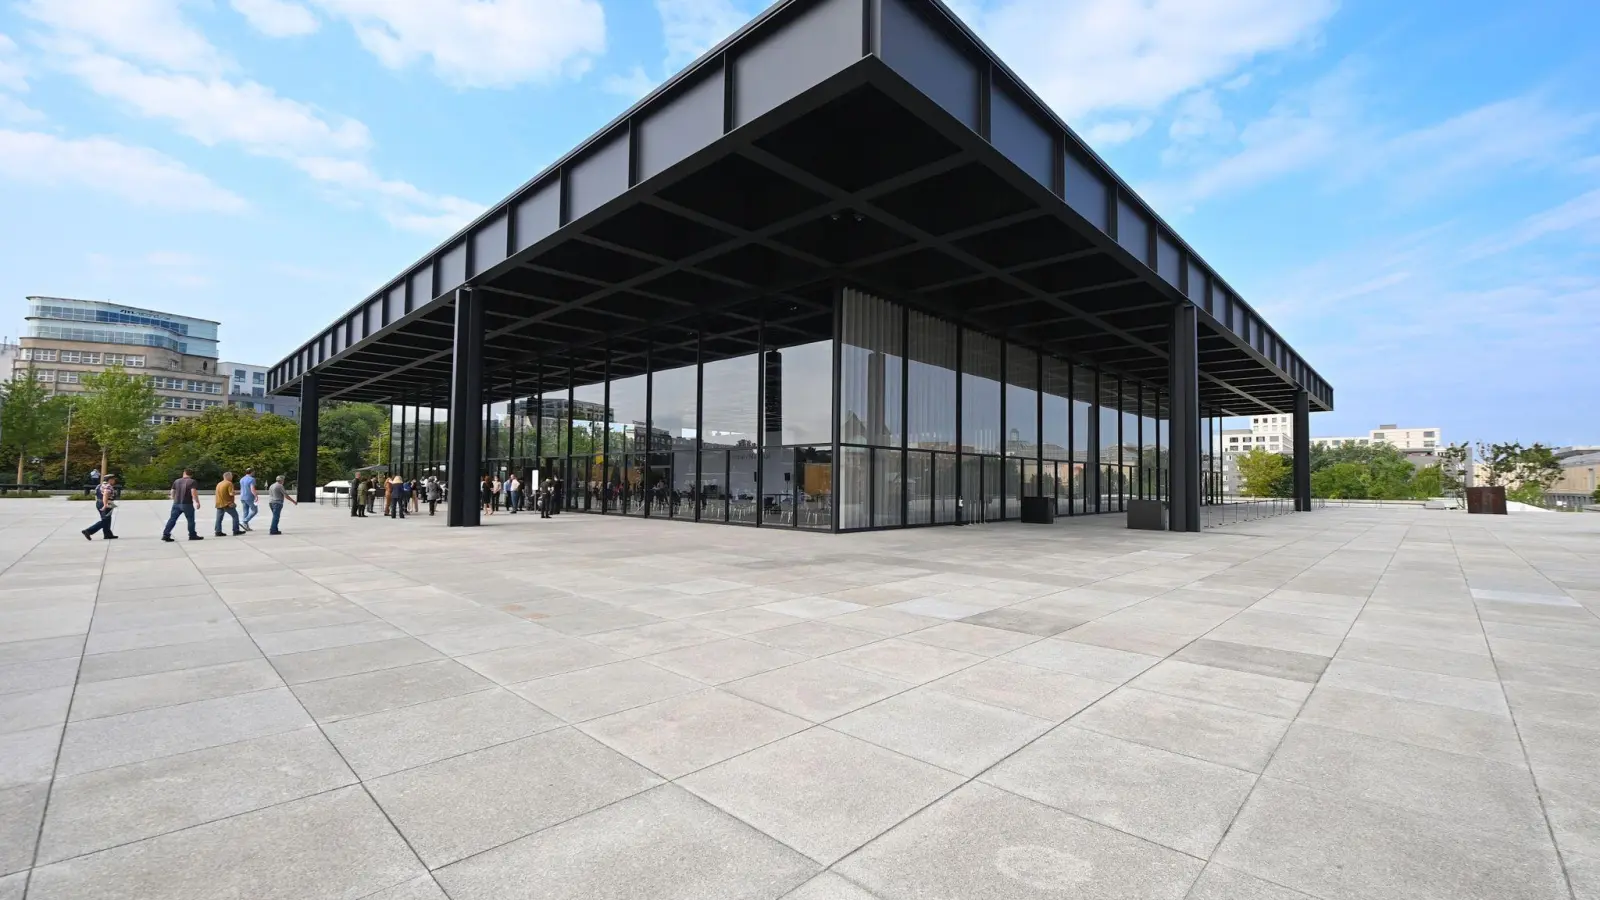 Die Neue Nationalgalerie in Berlin wird am Wochenende zur Mahnwache. (Foto: Soeren Stache/dpa-Zentralbild/dpa)